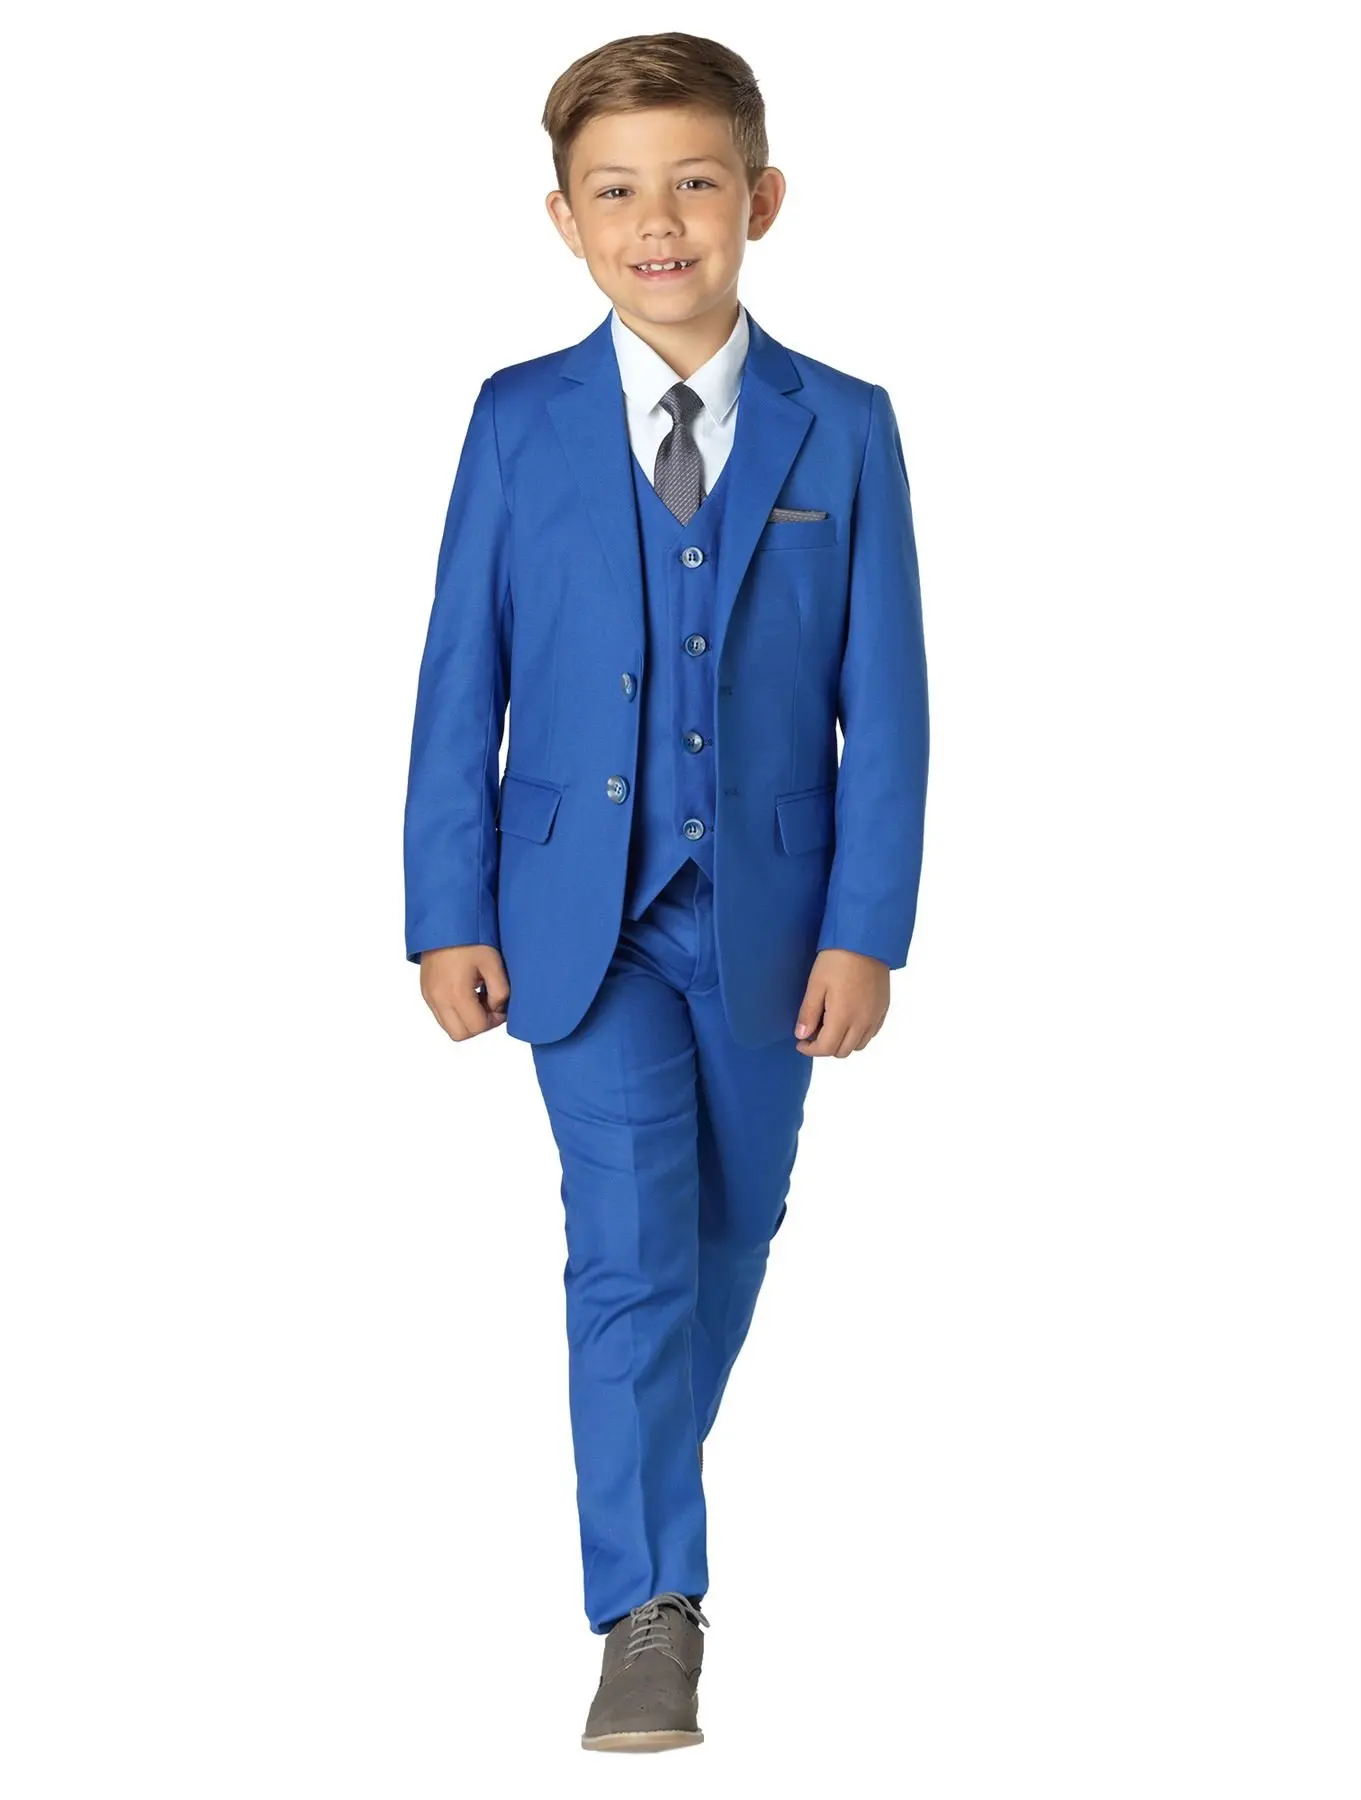 Картинка мальчика в костюме. Мальчик в синем костюме. Голубой костюм для мальчика. Мальчик на голубой смокинге. Синие классические костюмы для мальчиков.